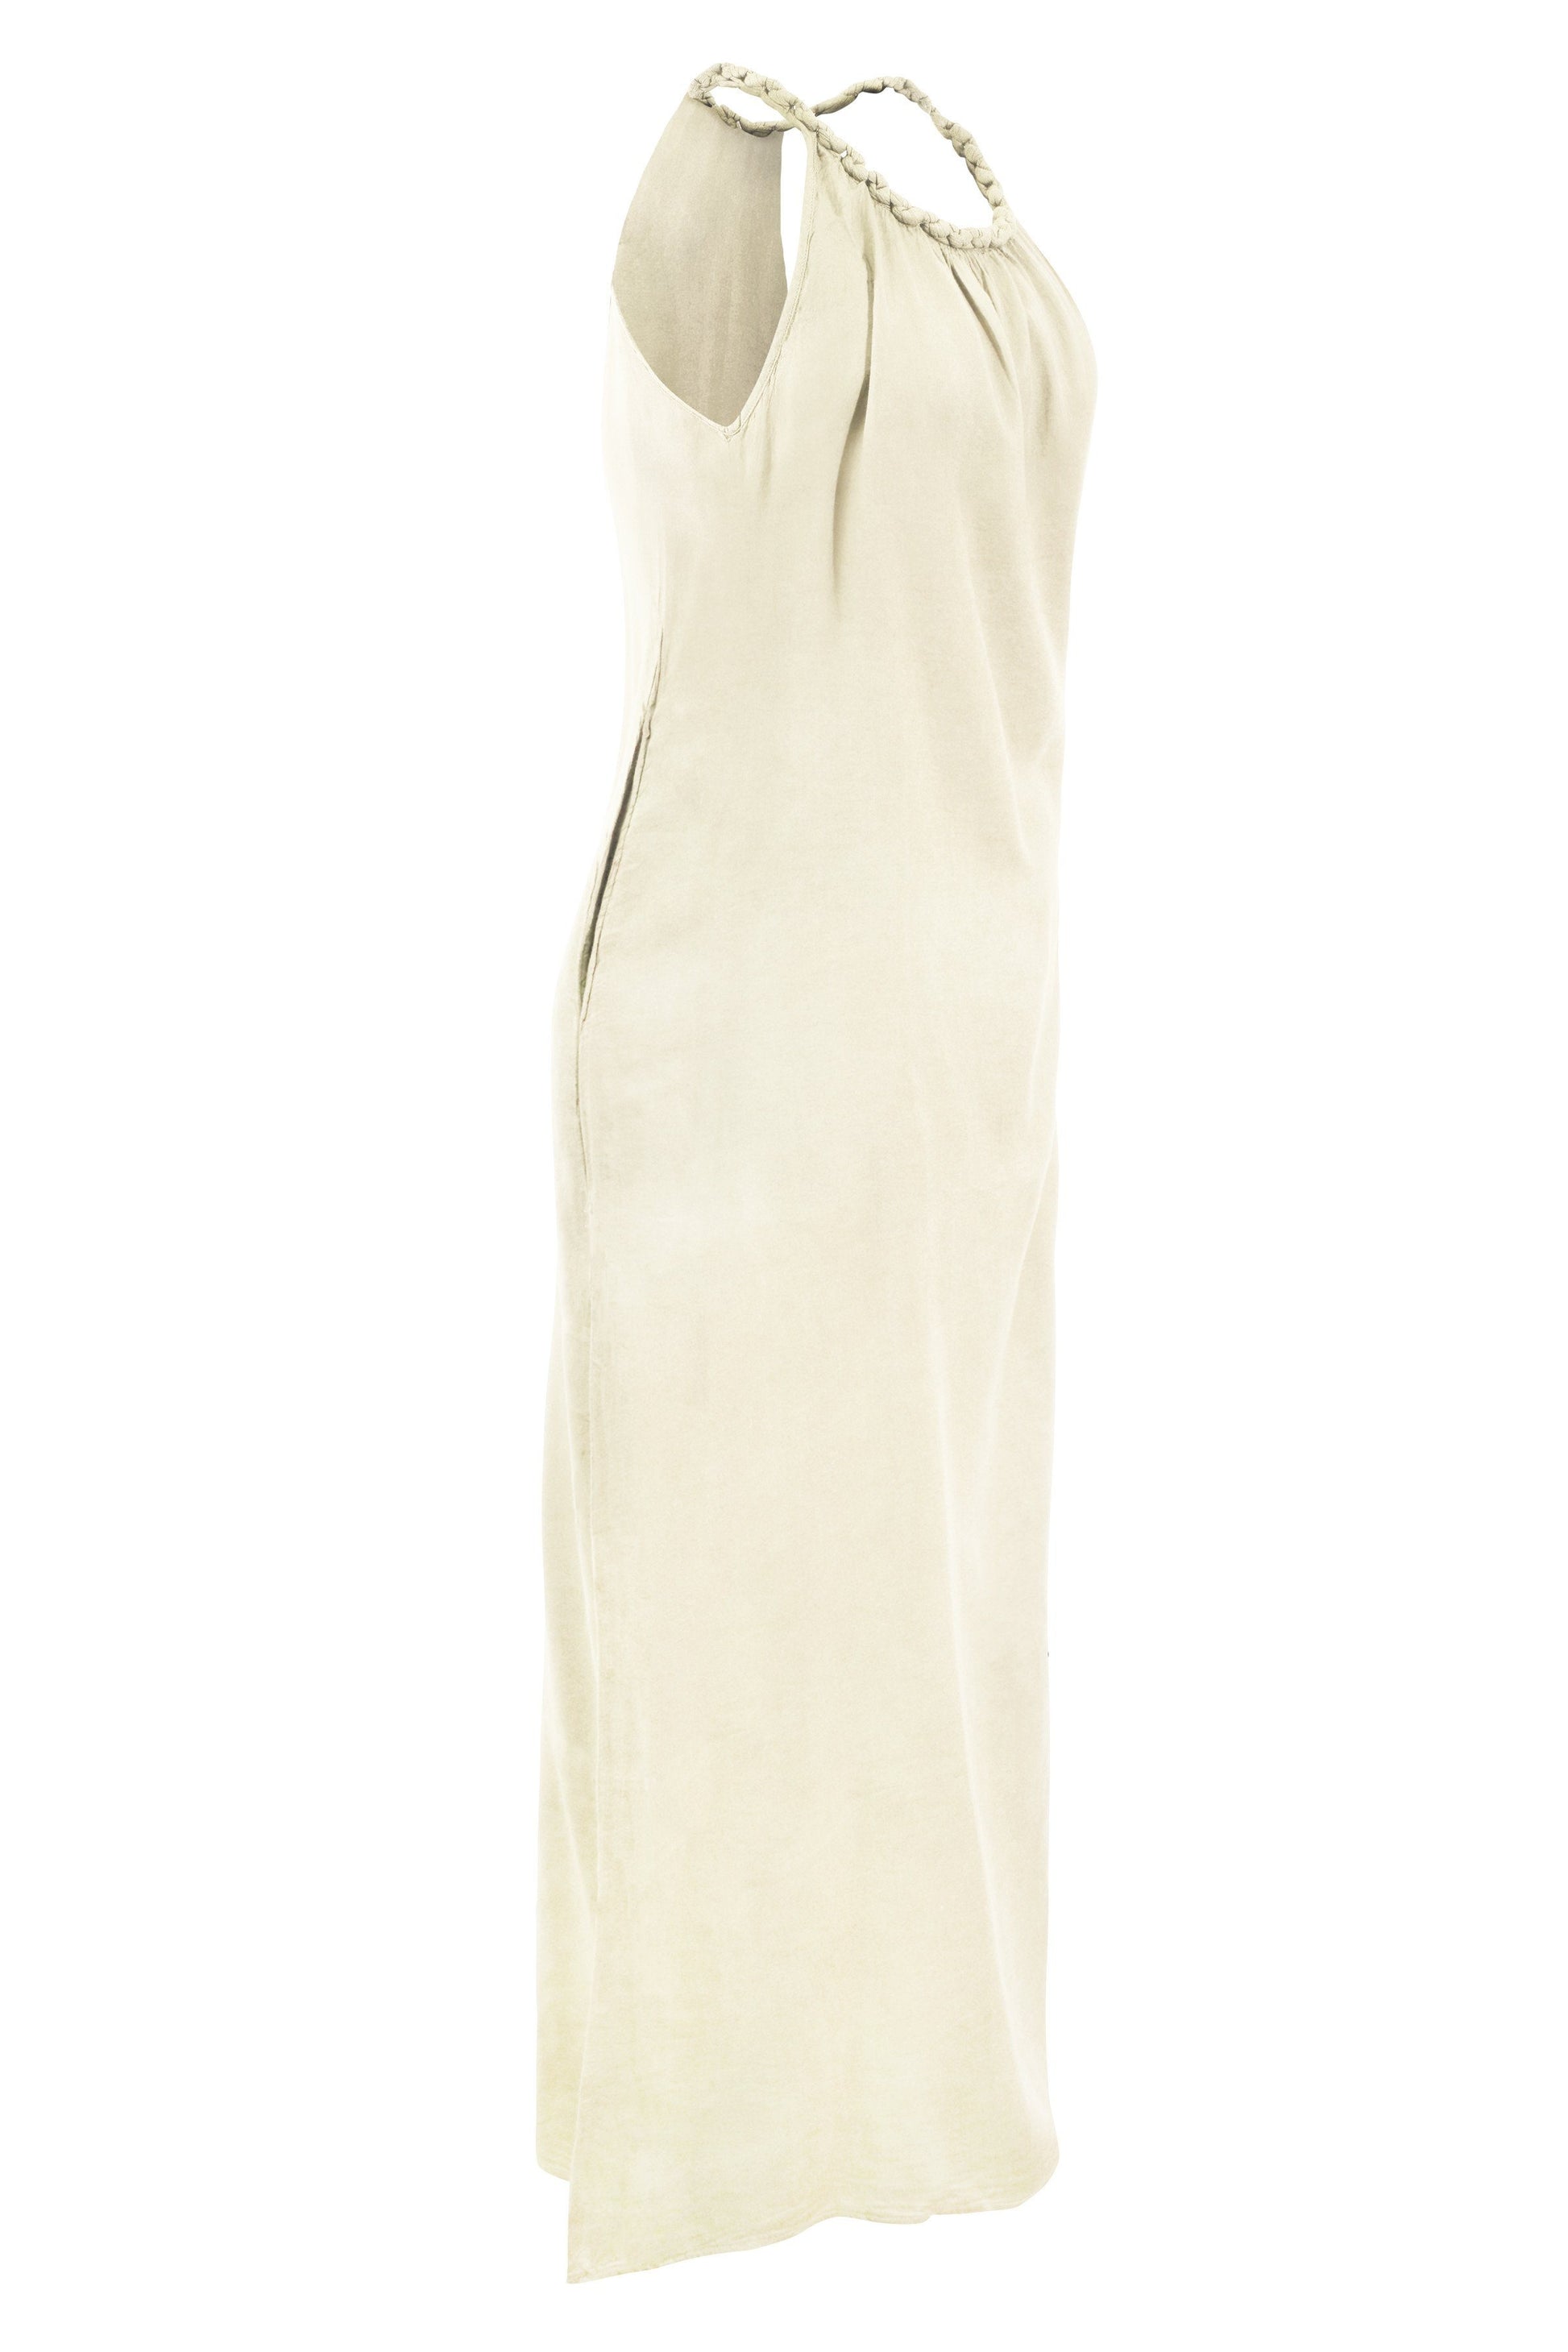 Pure Cotton Maxi Dress: Luxurious Comfort with Plait Shoulder Straps - CCCollections